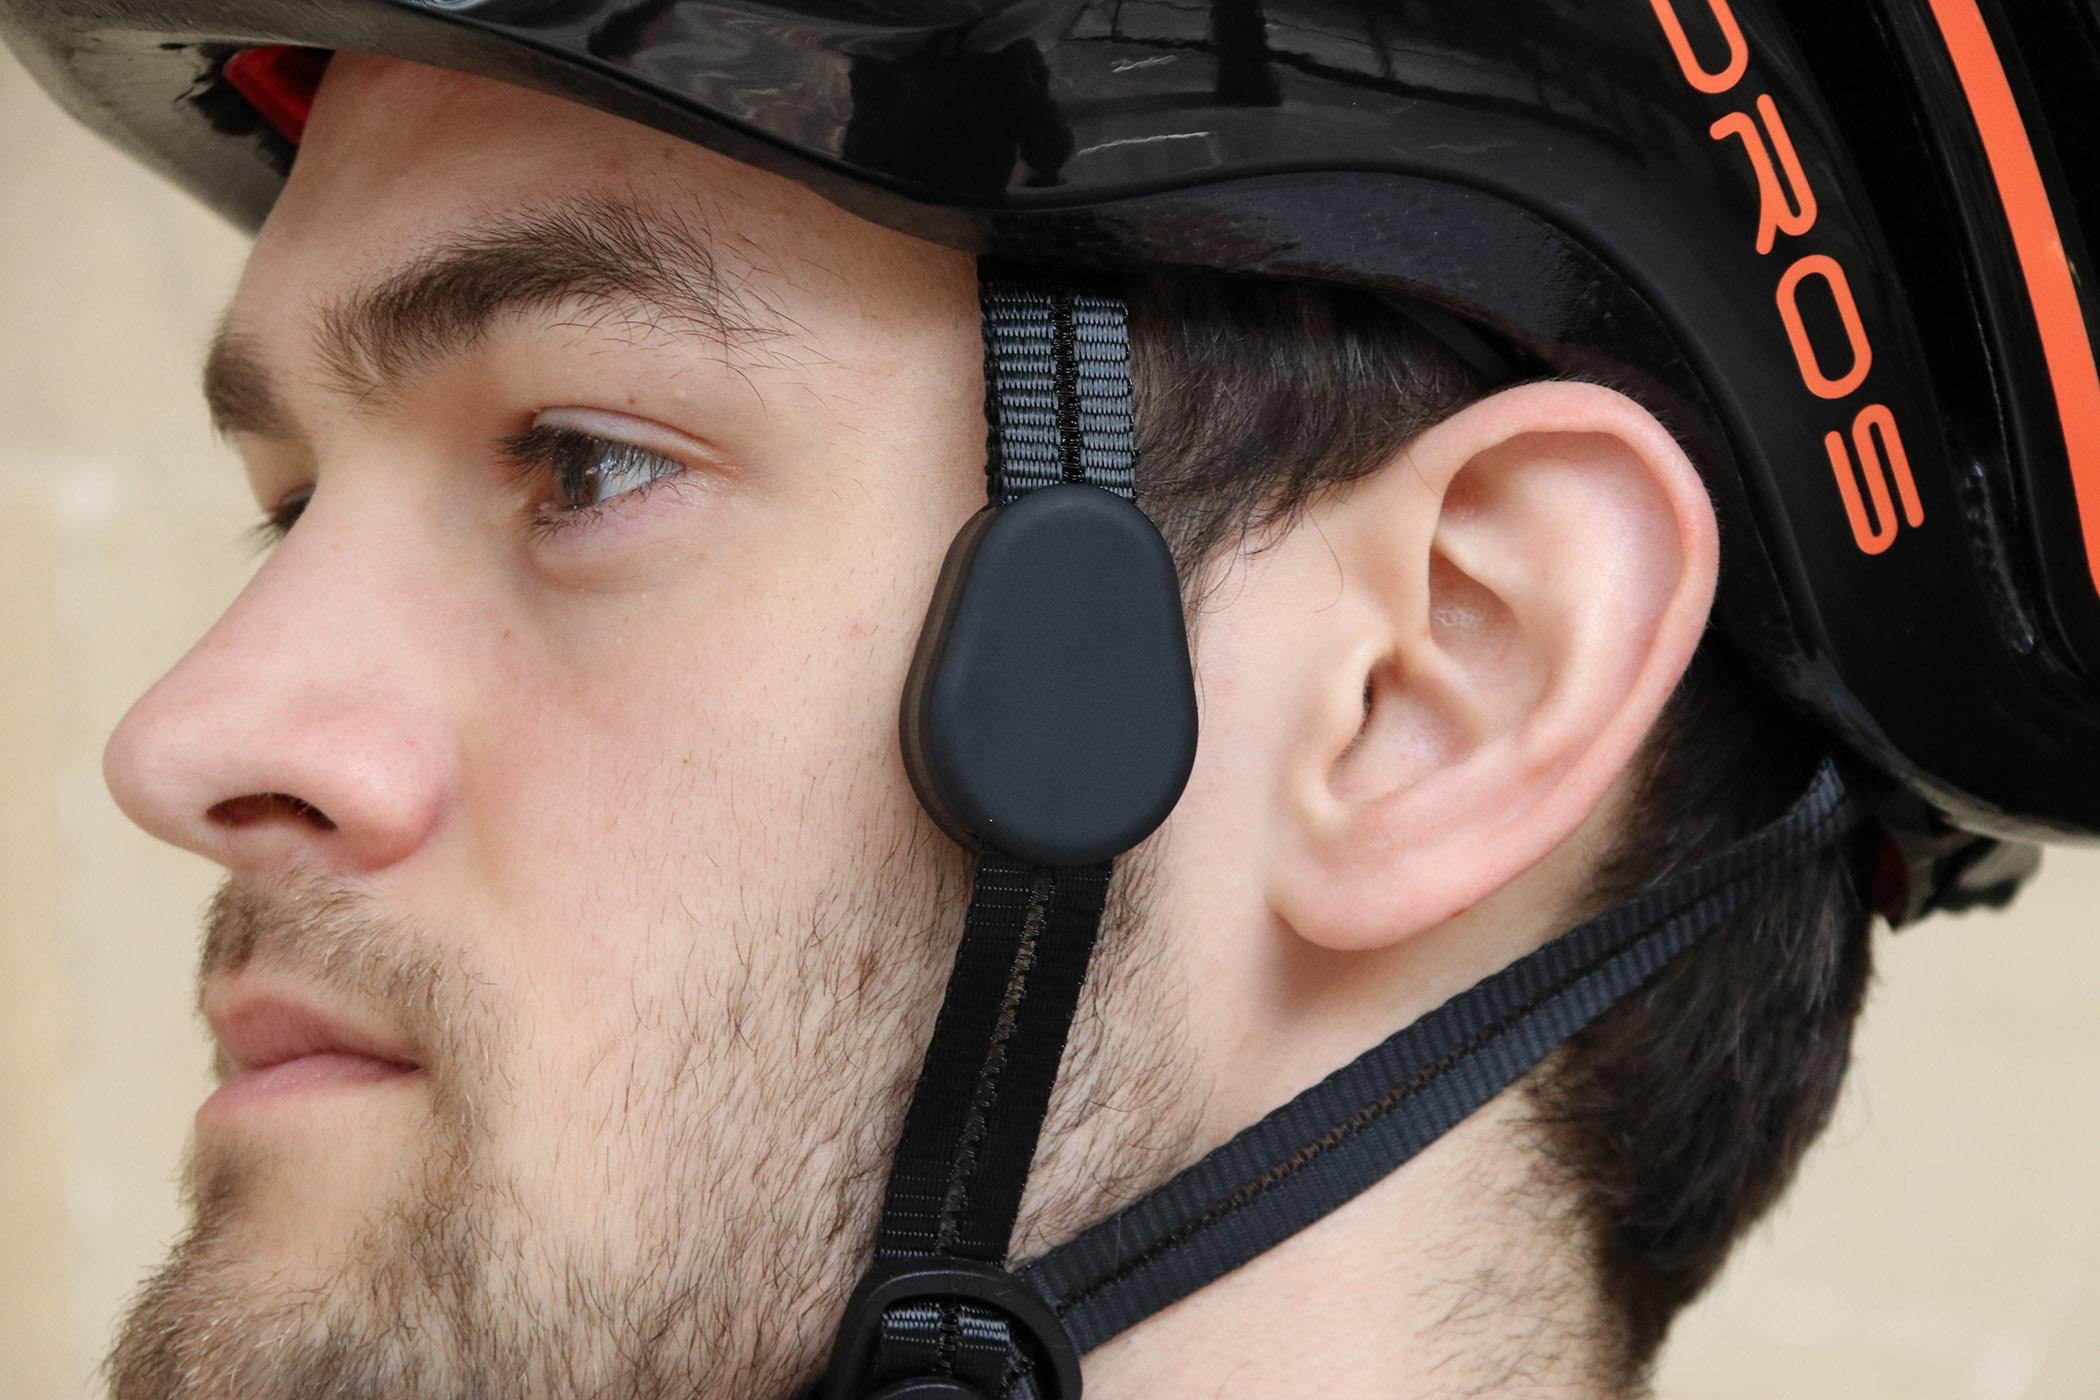 Review: Coros Linx Smart Helmet | road.cc